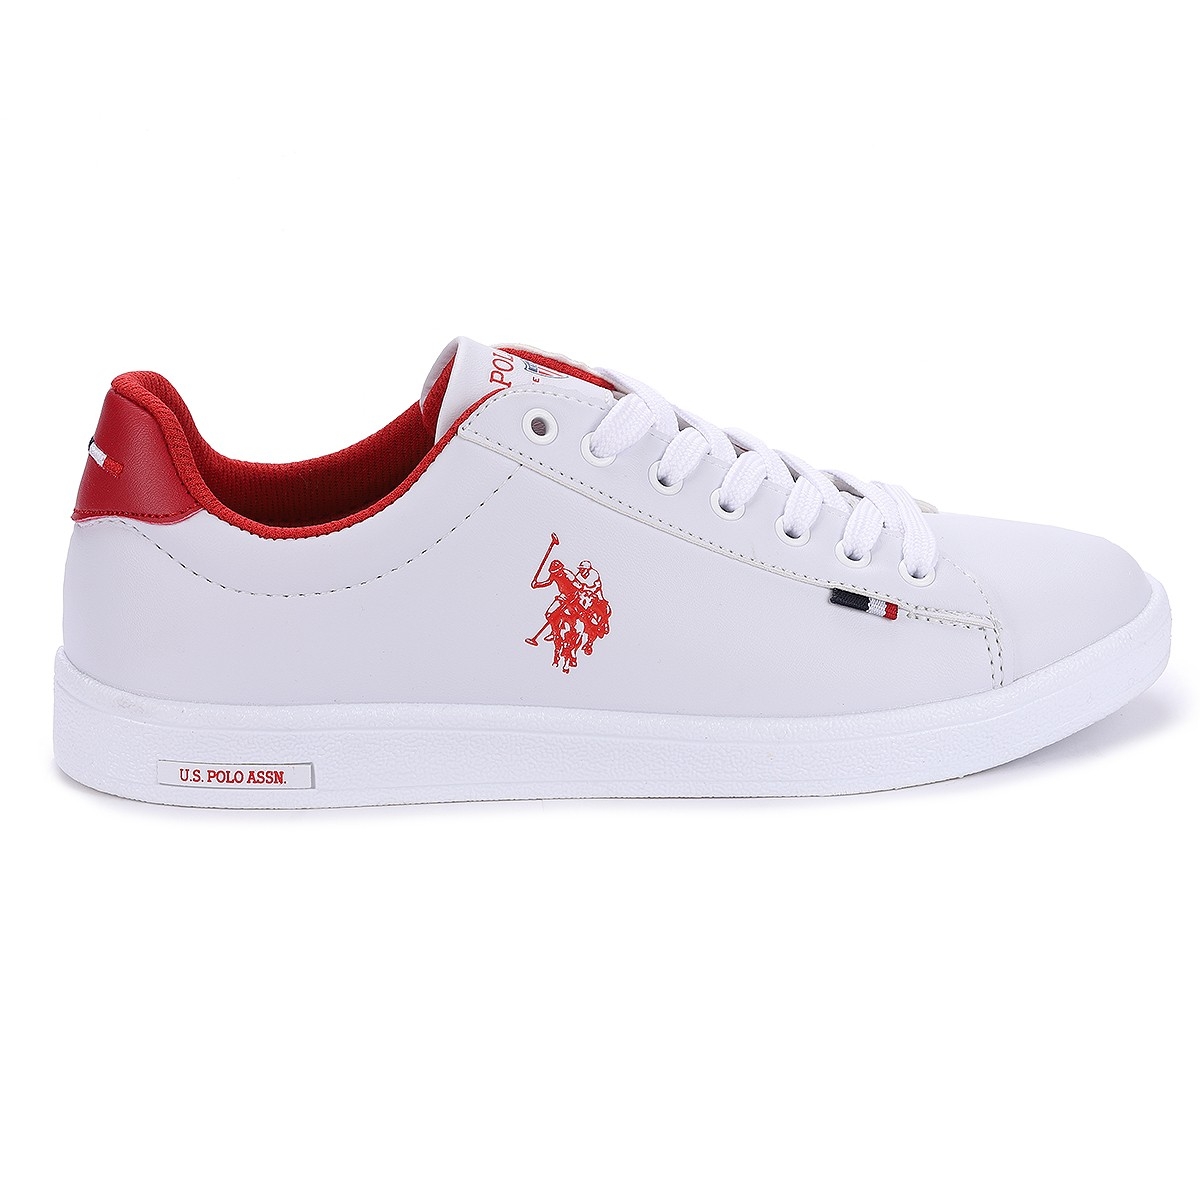 Flo Assn. Franco Wmn Günlük Yürüyüş Bayan Spor Ayakkabı Beyaz Kırmızı. 2